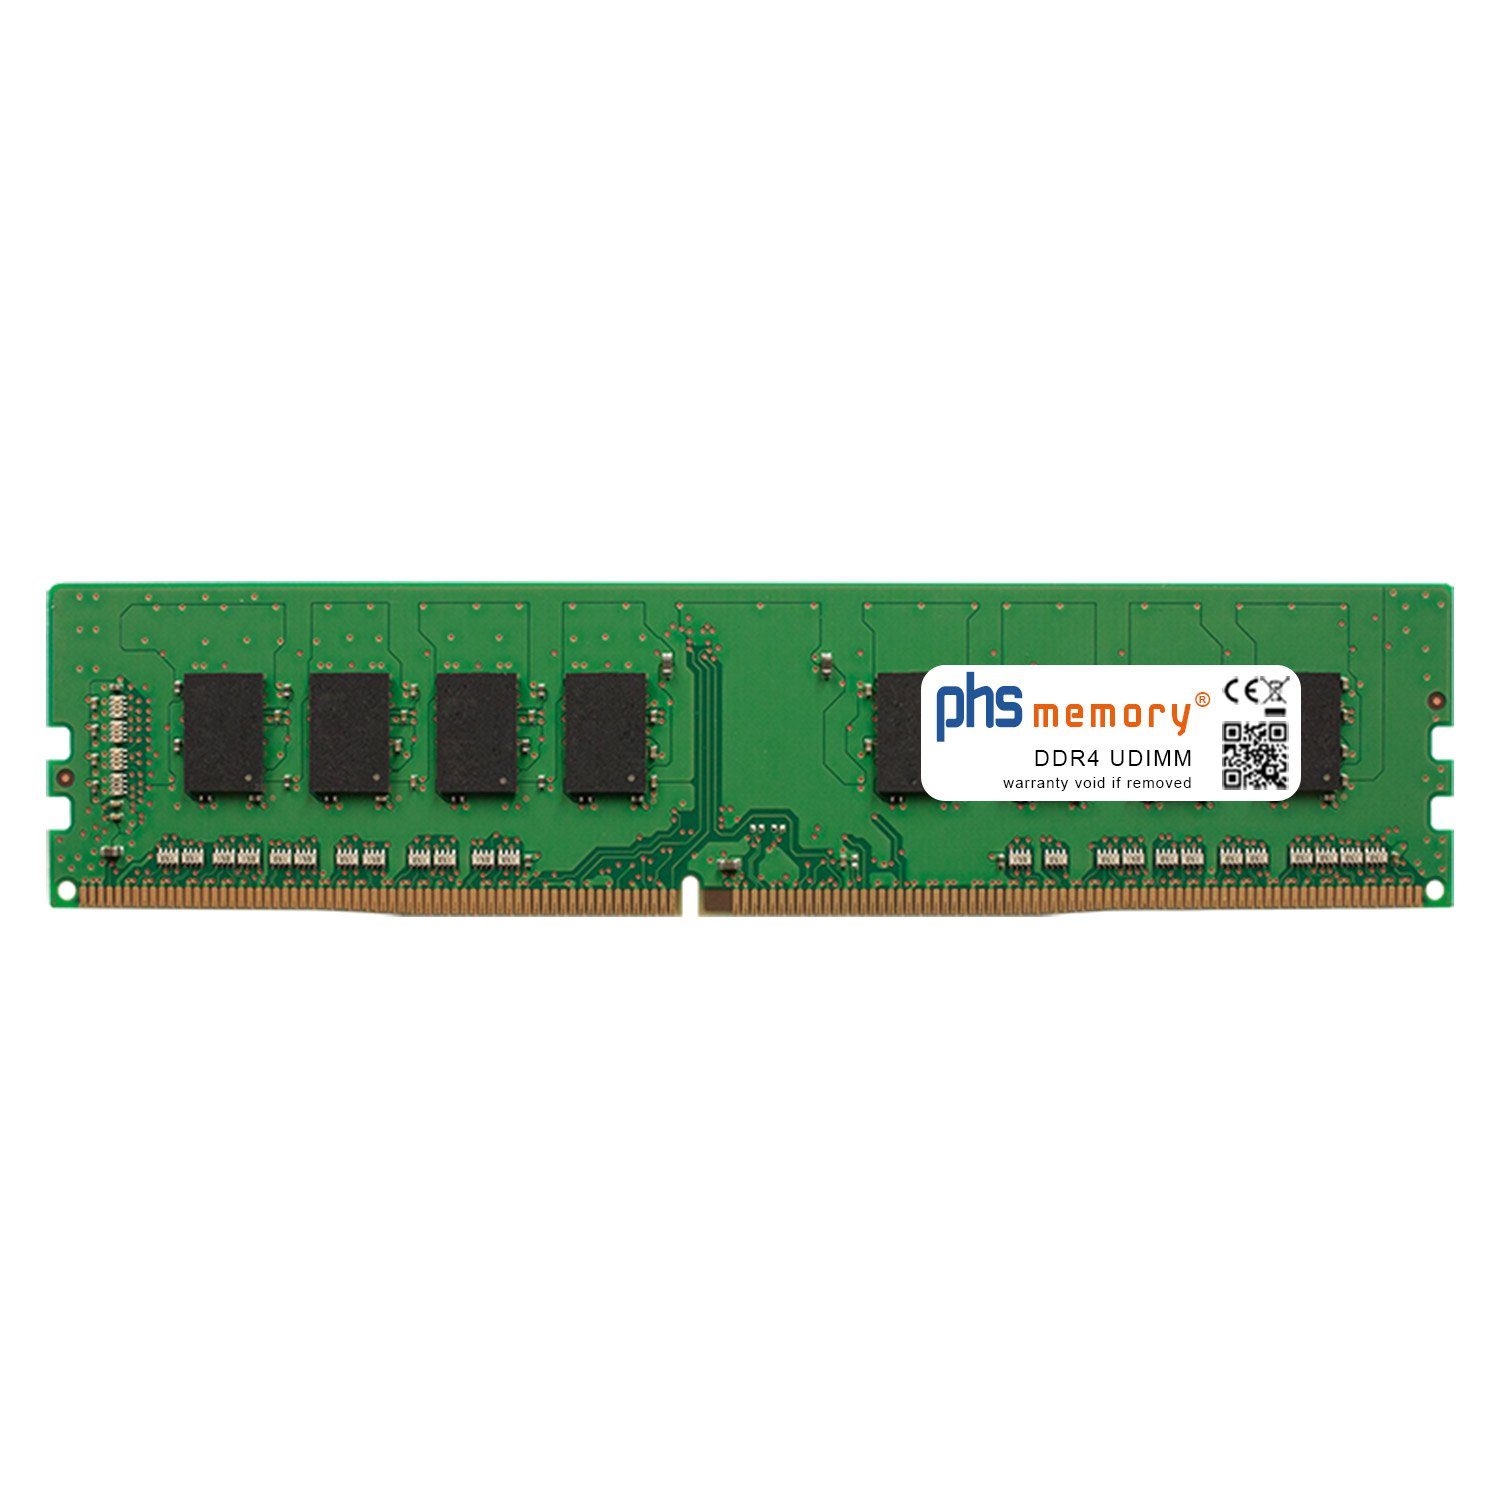 PHS-memory RAM für Captiva Power Starter R62-263 TFT Bundle Arbeitsspeicher